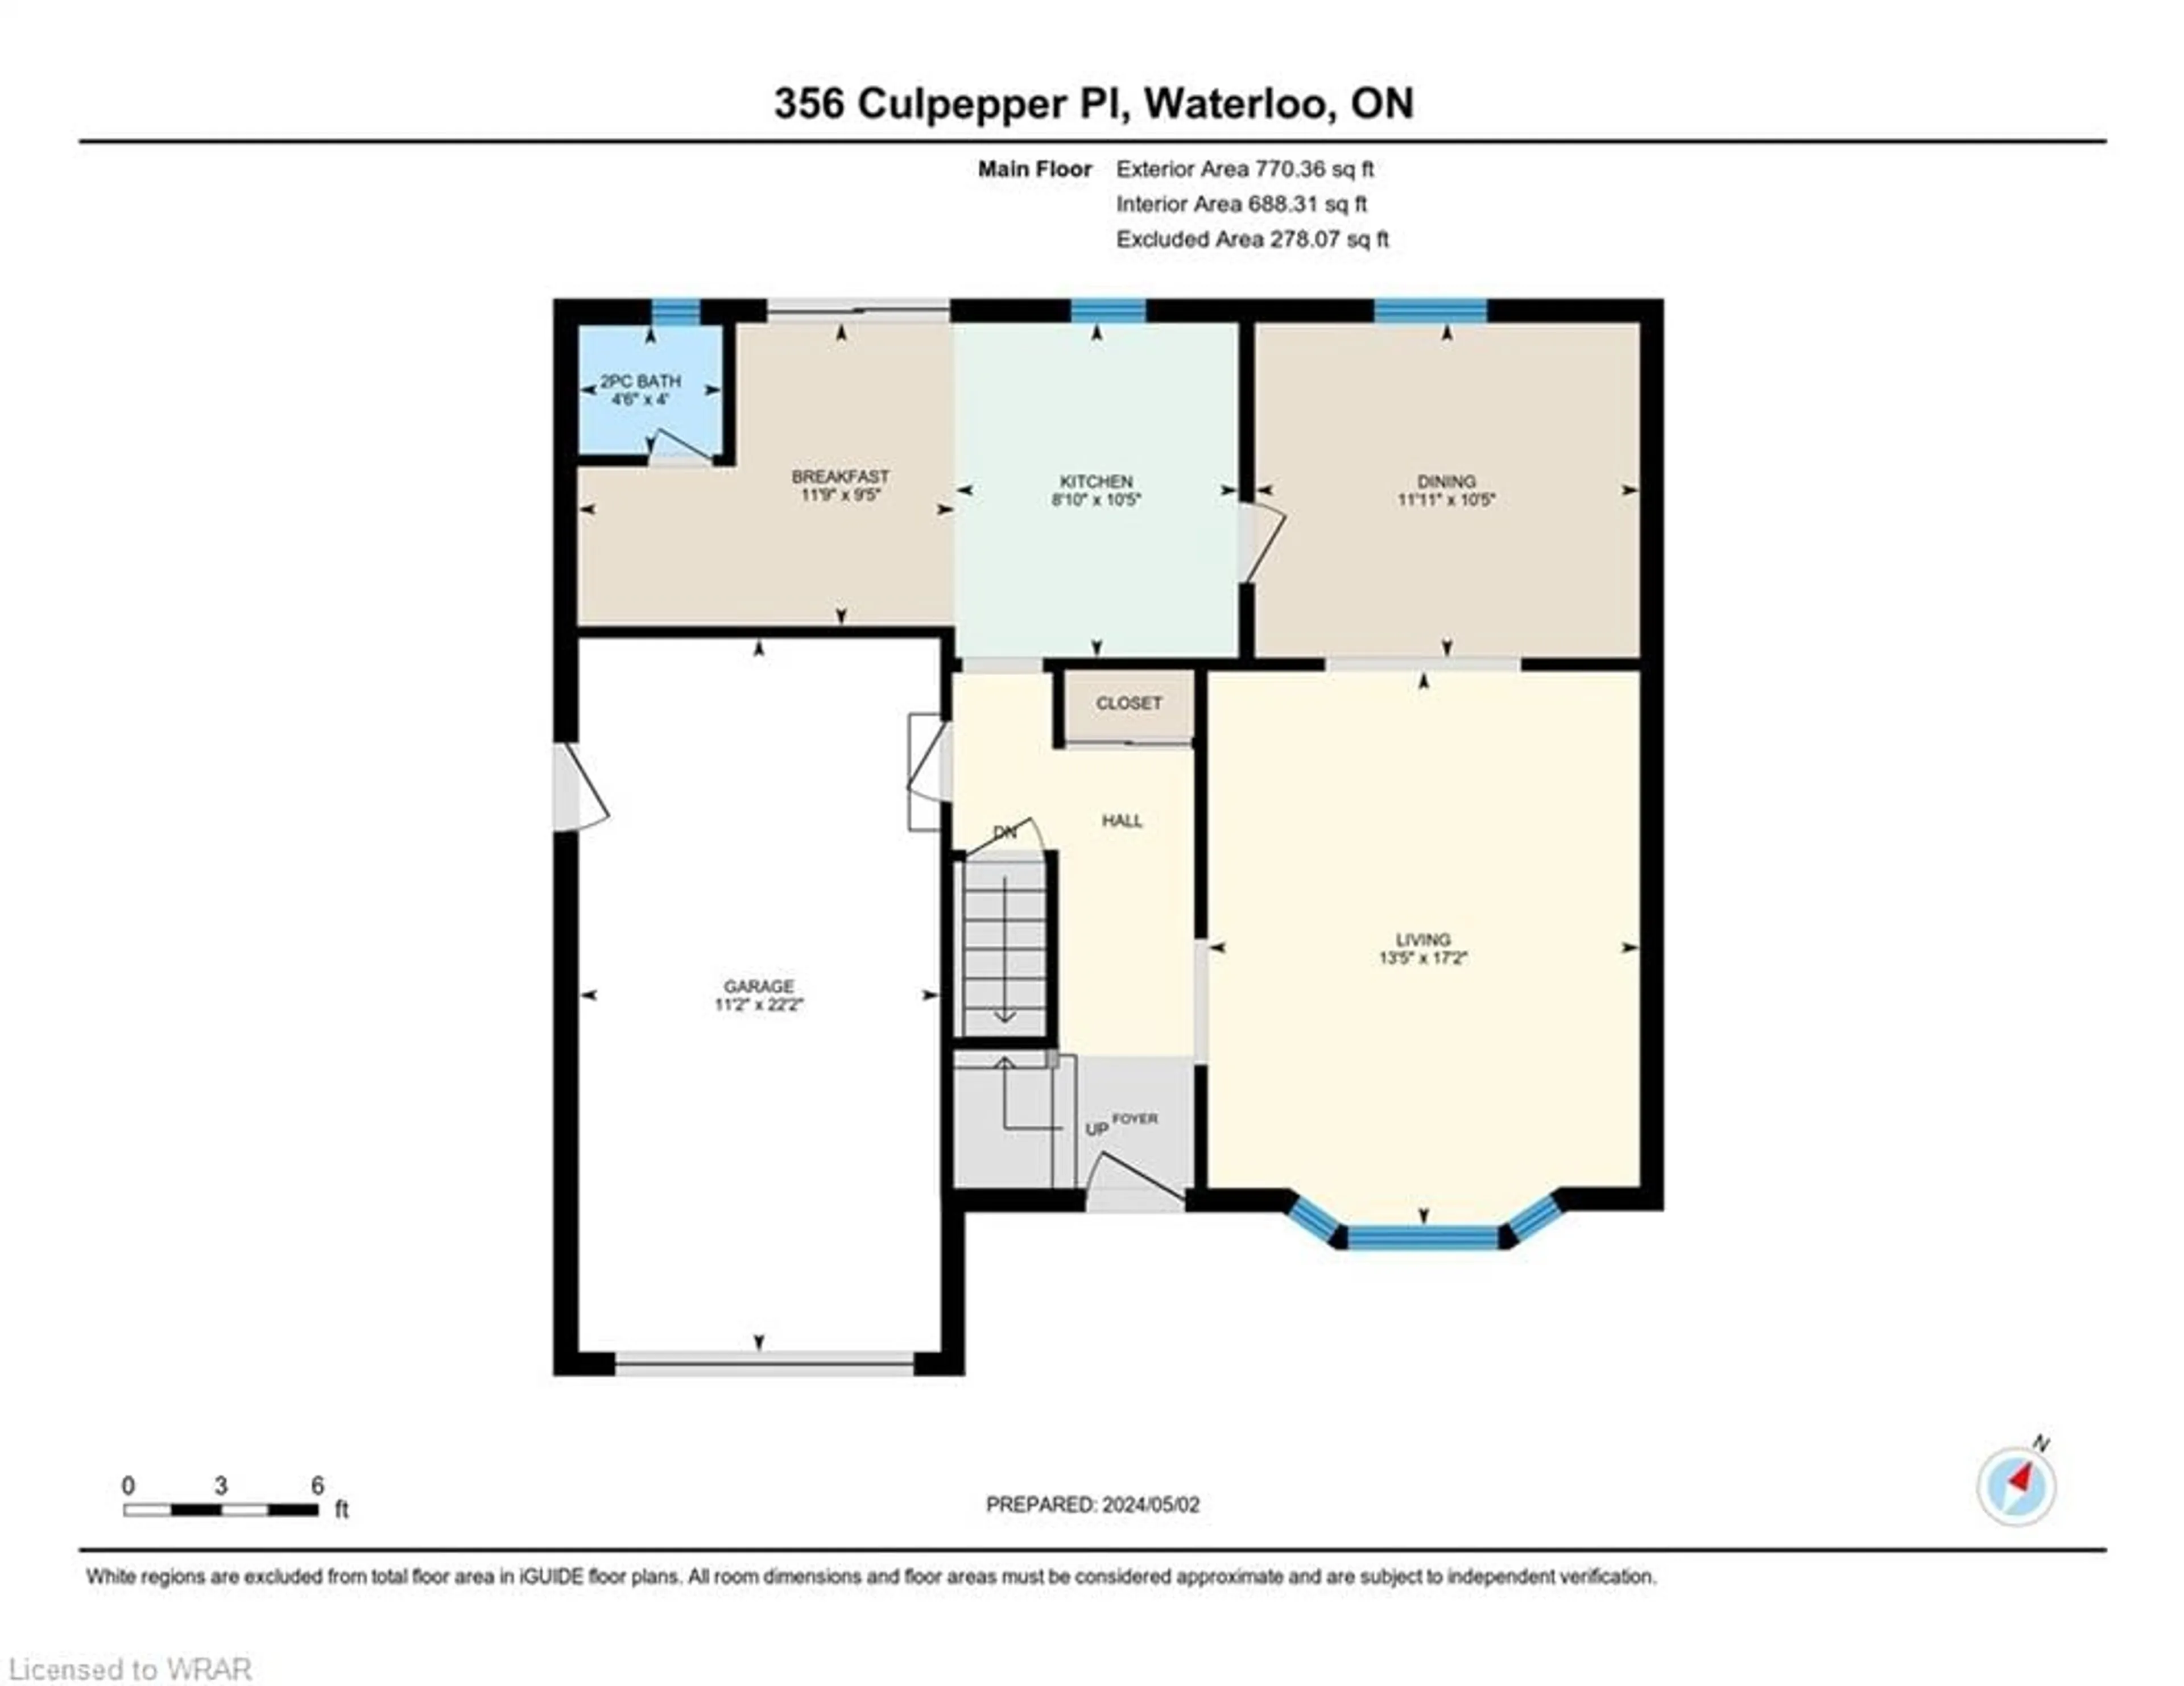 Floor plan for 356 Culpepper Pl, Waterloo Ontario N2L 5L3